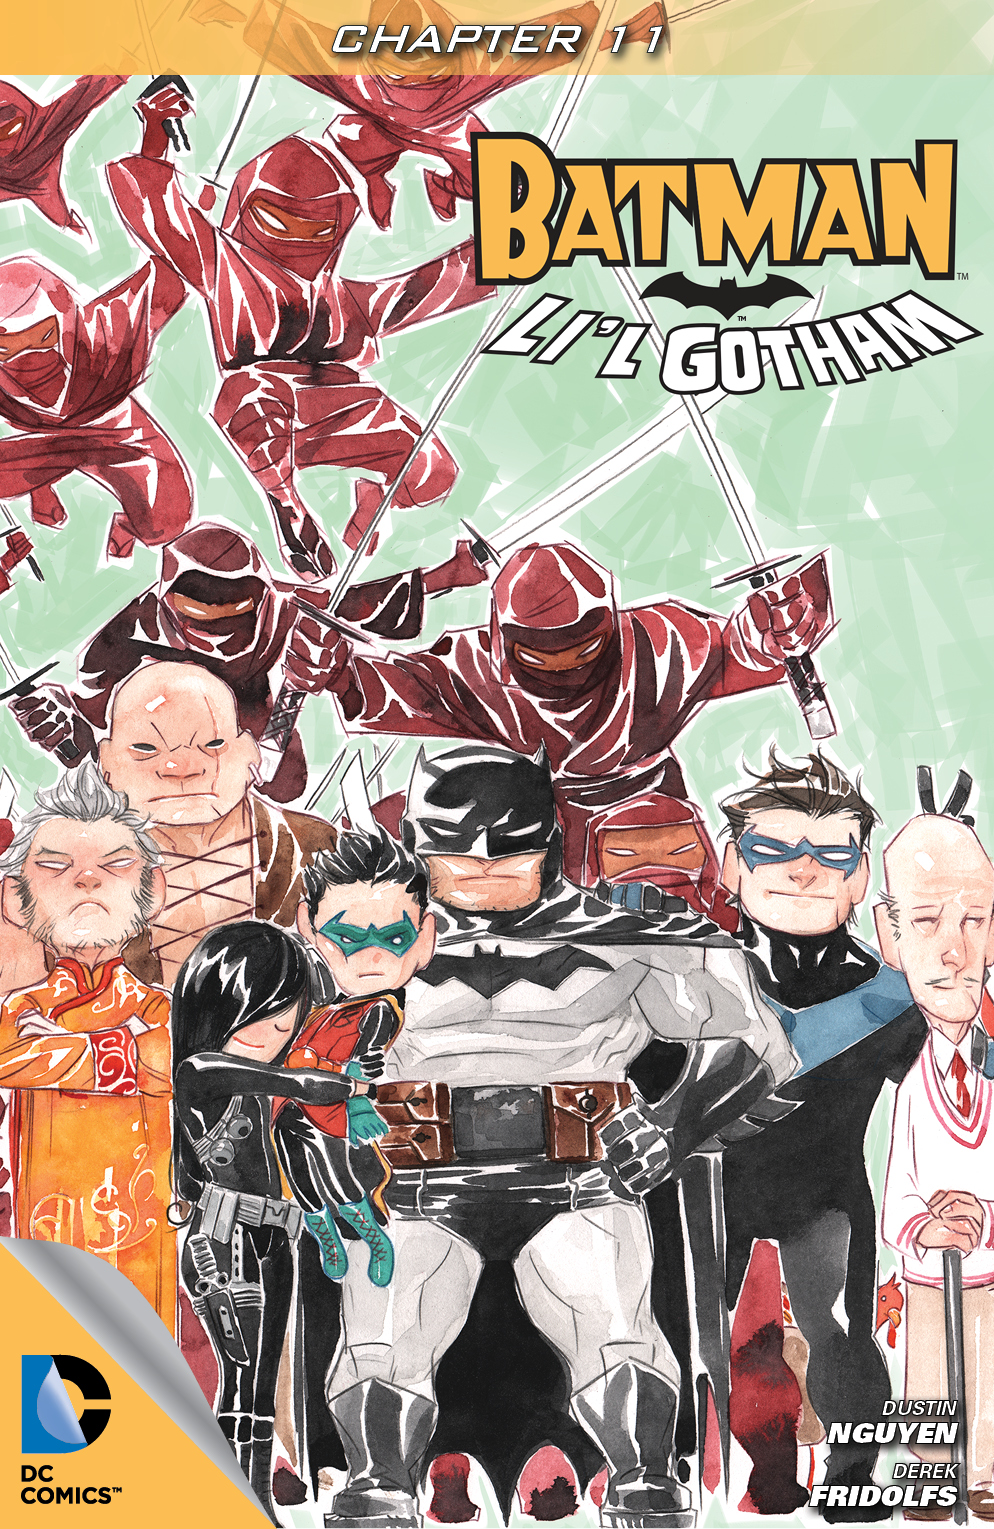 Batman: Li'l Gotham #11 preview images